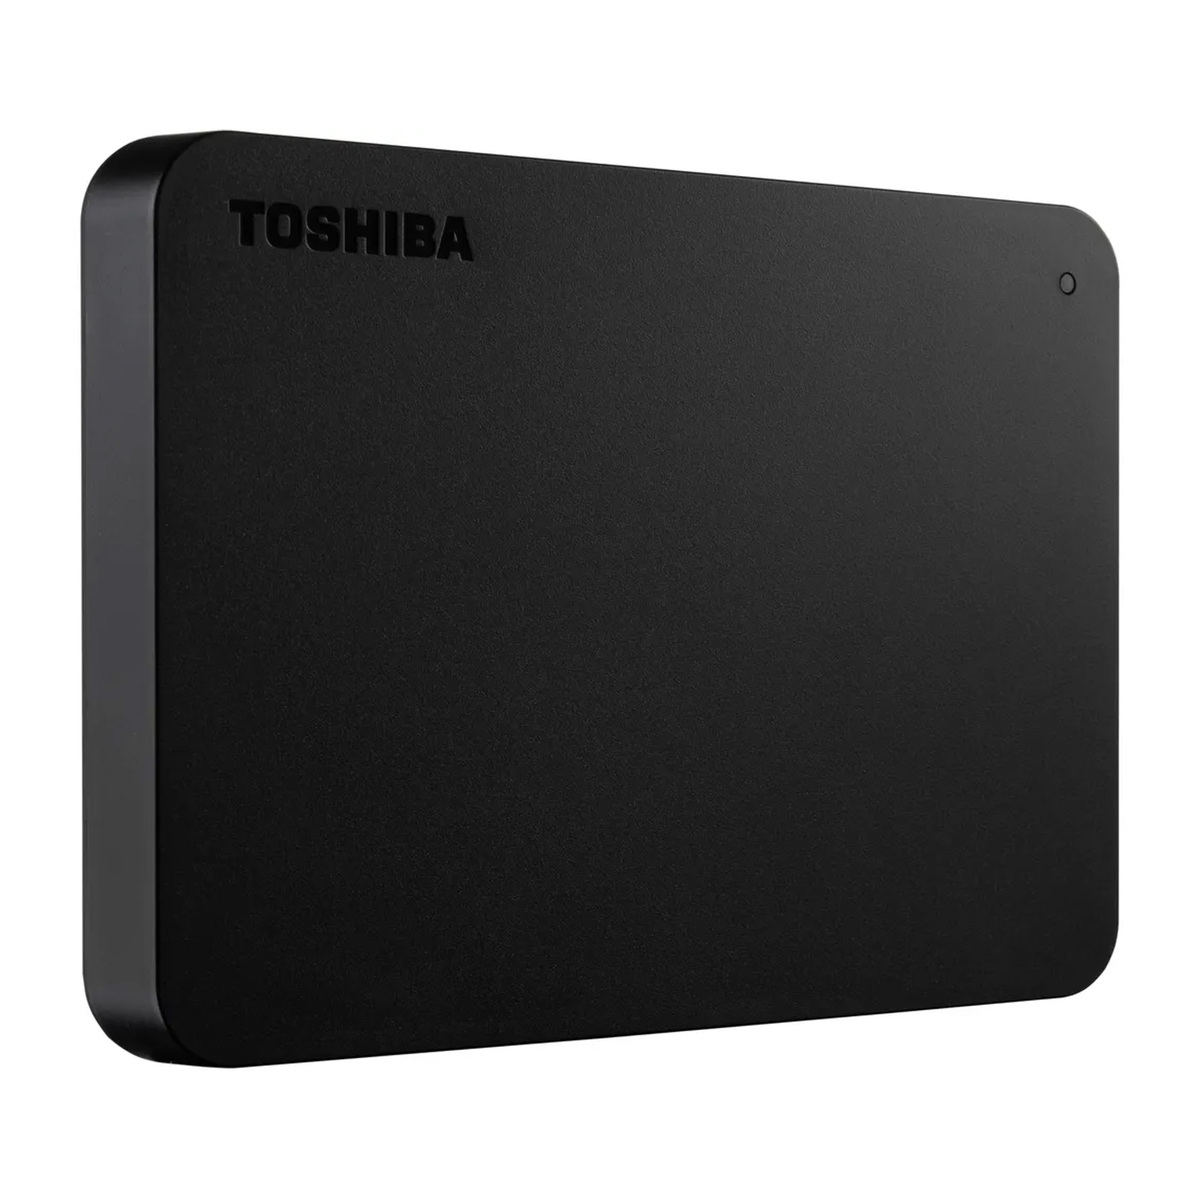 Toshiba HDD Basics c2 4TB USB3 TB540